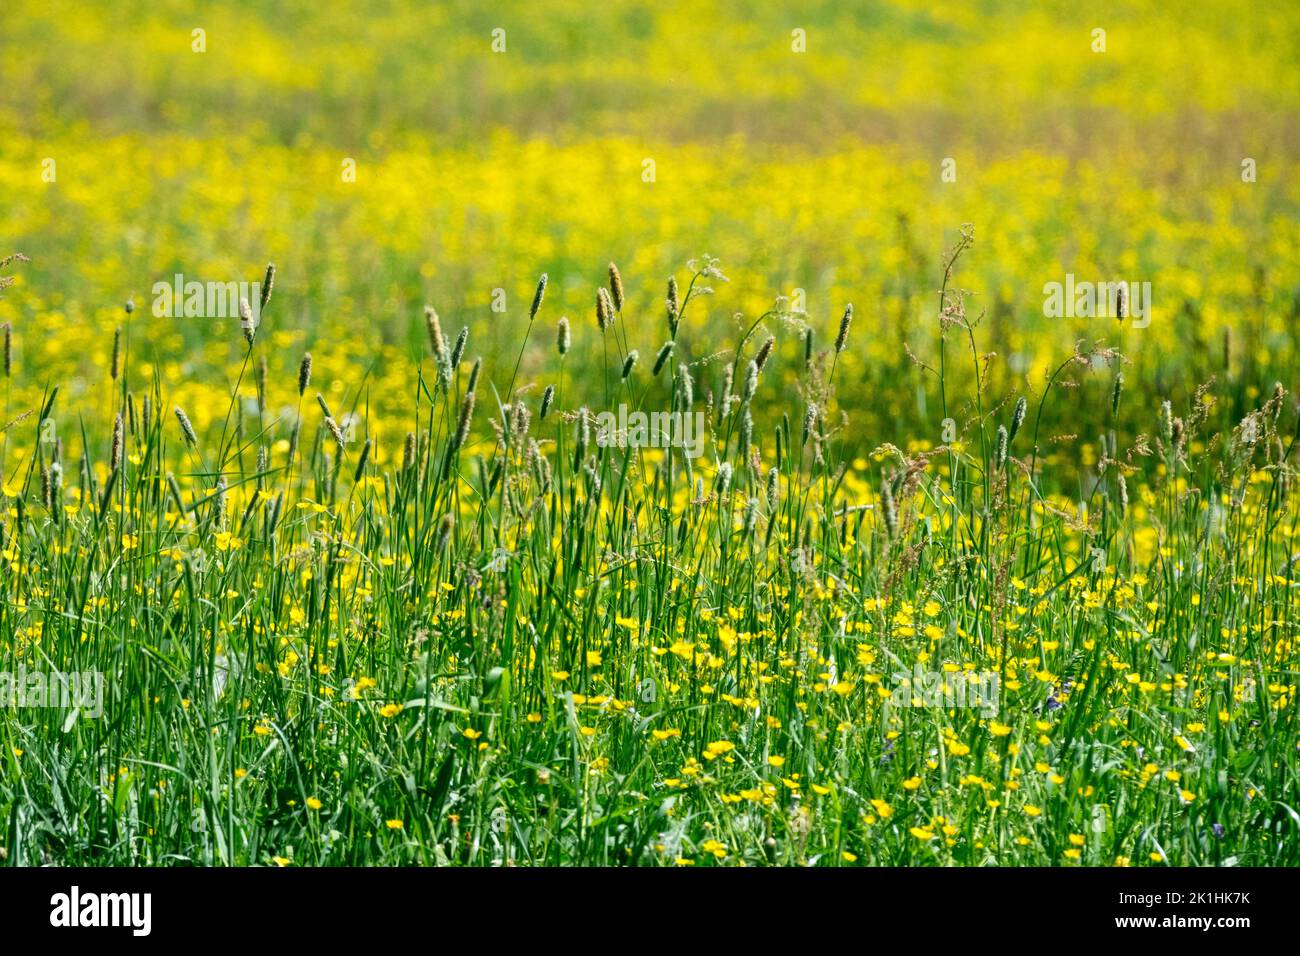 Foxtail prado, Granja de hierba del campo, paisaje, fondo verde, pastos largos nadie y buttercups amarillo prado Foto de stock